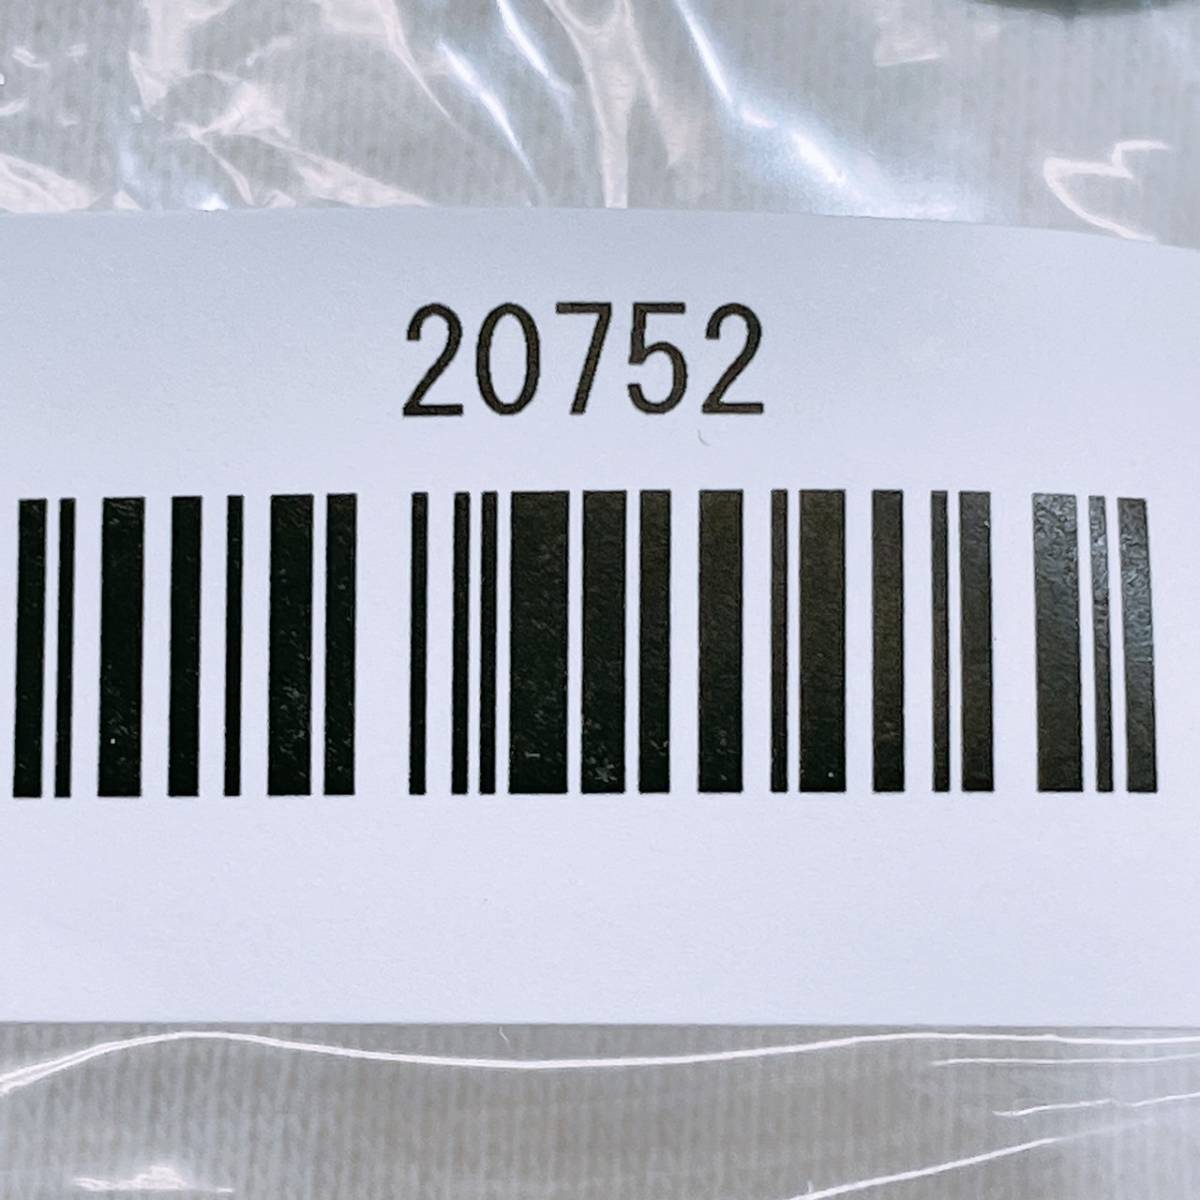 【20752】 RATTLE TRAP ラトルトラップ トップス メンズファッション ニット パーカー プルオーバーパーカー 英字プリント ホワイト 白 M